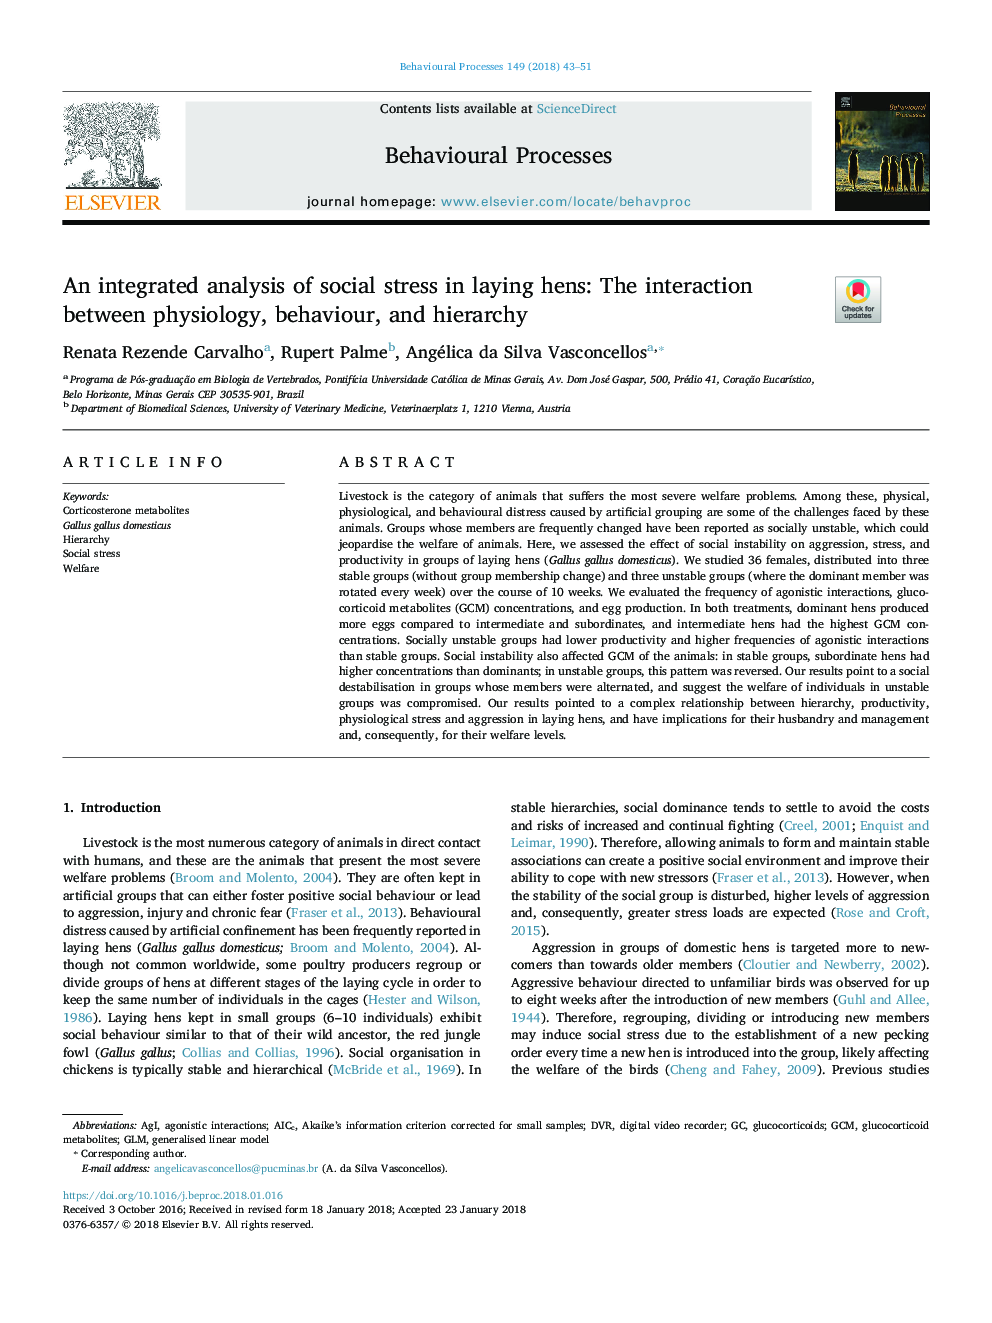 یک تجزیه و تحلیل یکپارچه از استرس اجتماعی در مرغ تخمگذار: تعامل بین فیزیولوژی، رفتار و سلسله مراتب 